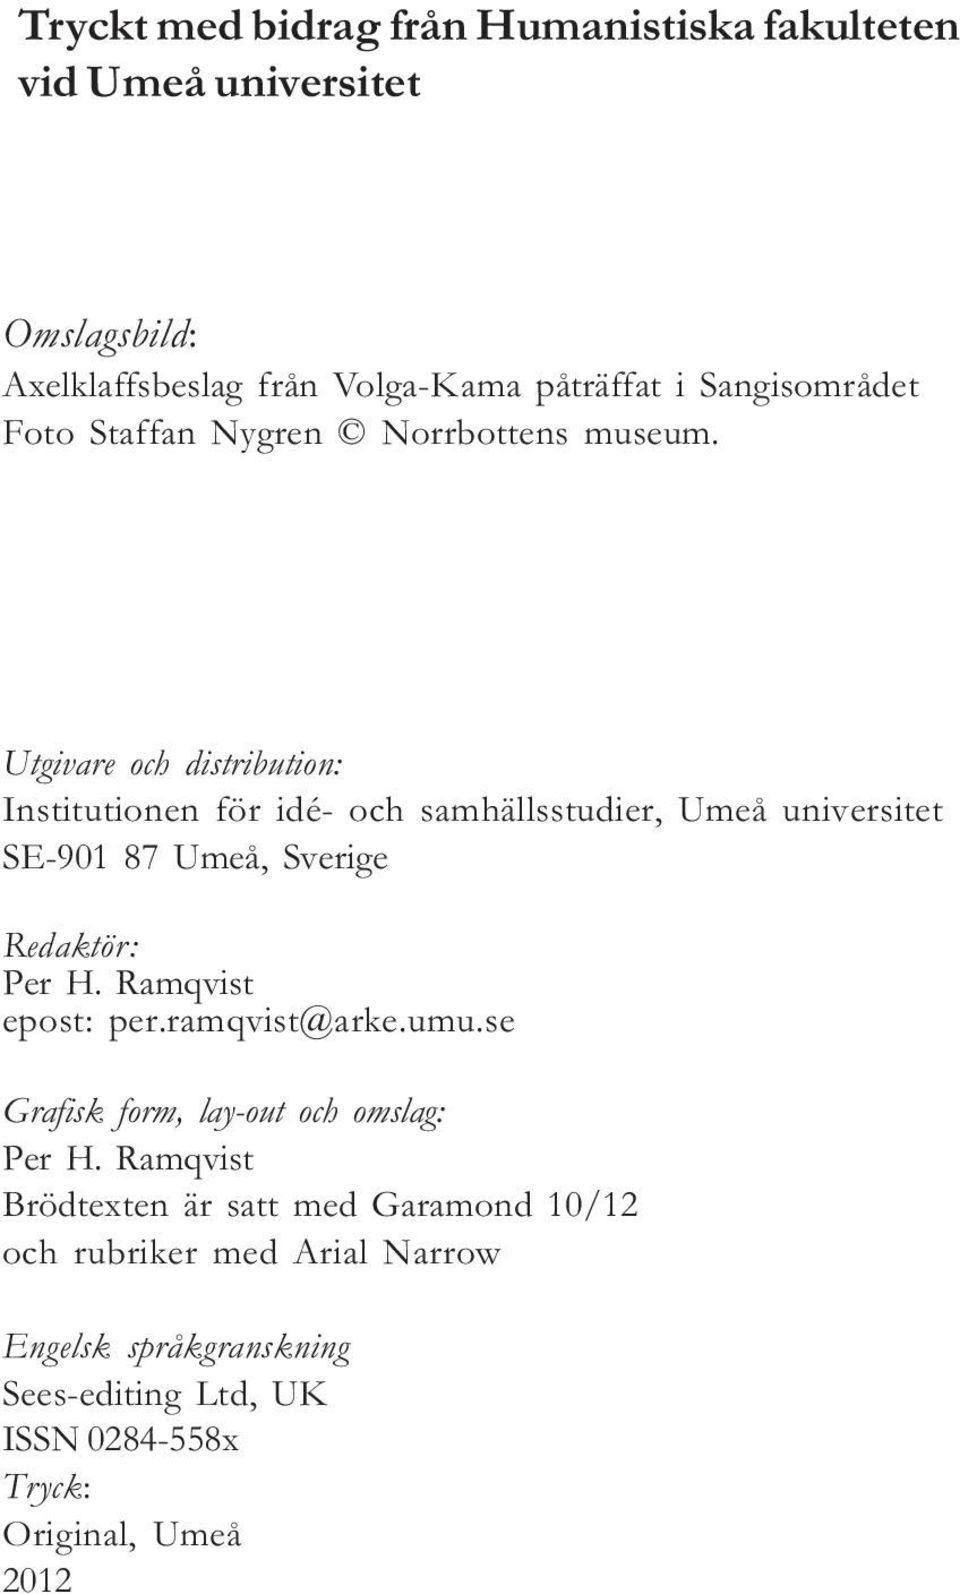 Utgivare och distribution: Institutionen för idé- och samhällsstudier, Umeå universitet SE-901 87 Umeå, Sverige Redaktör: Per H.